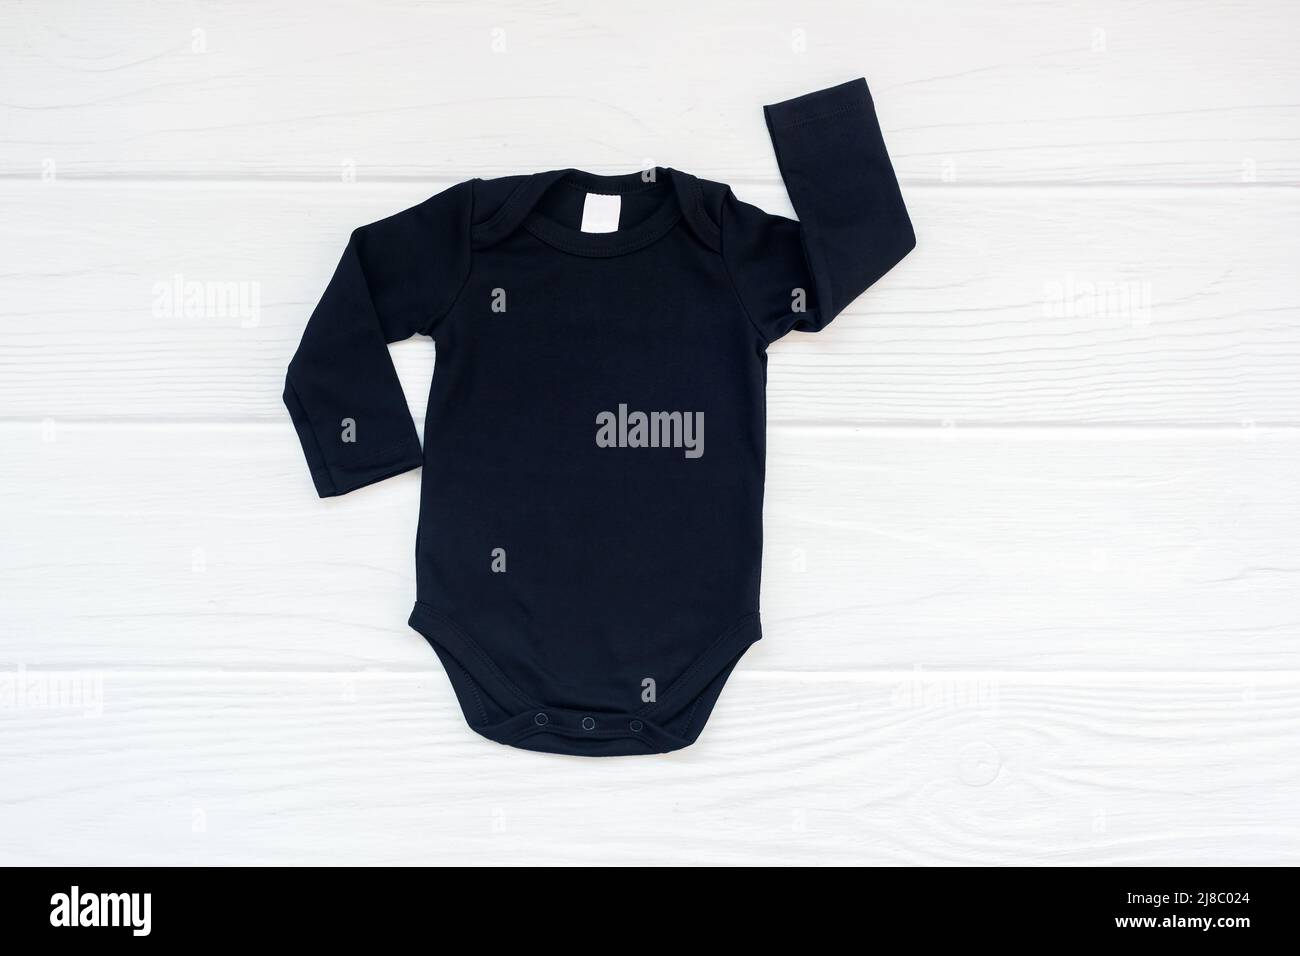 Simple black baby bodysuit long sleeve flatlay mockup on white wood background. Stock Photo